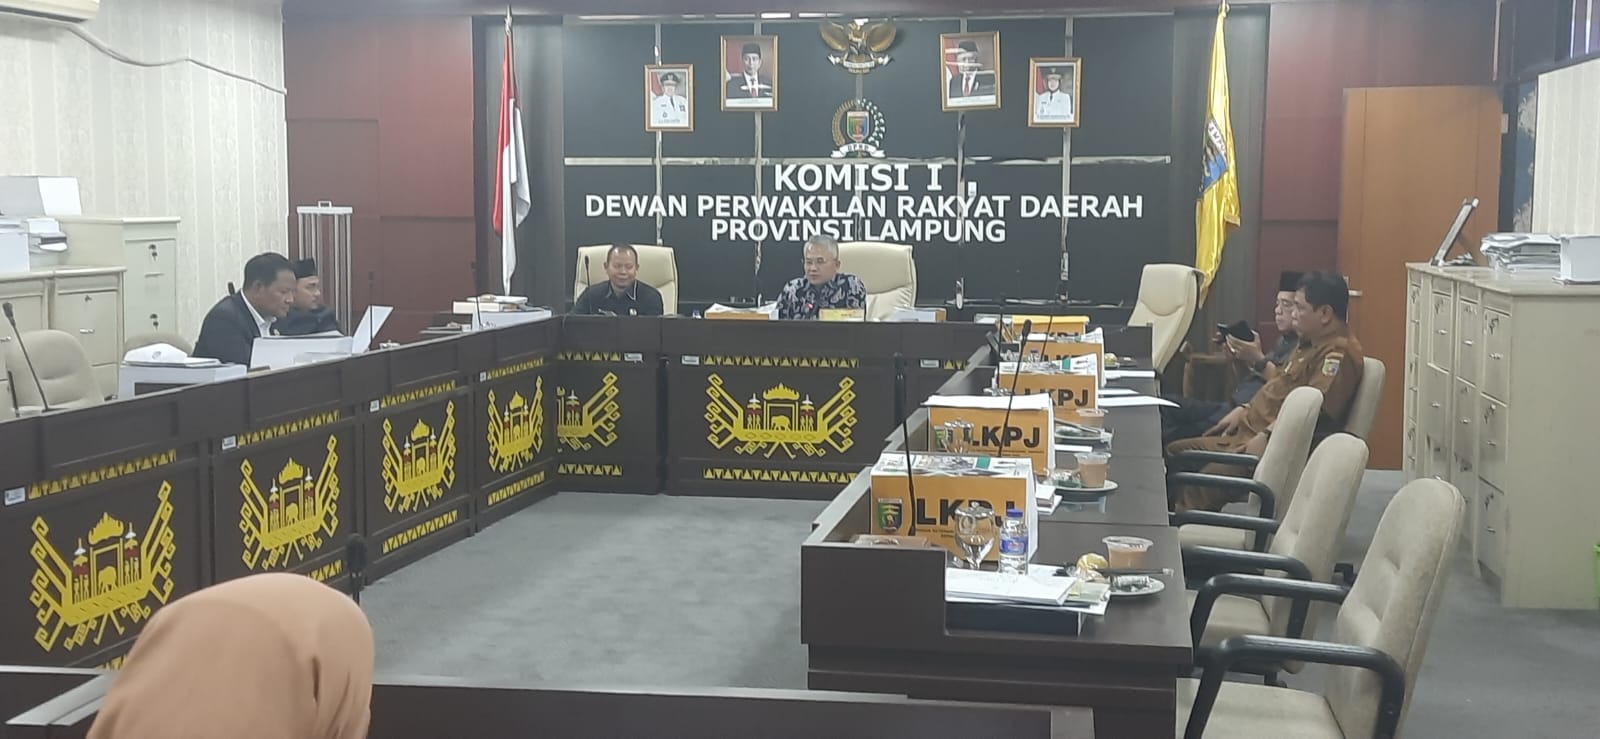 DPRD dan Pemprov Lampung Sepakat Jika Aktivitas PT PSM Dihentikan